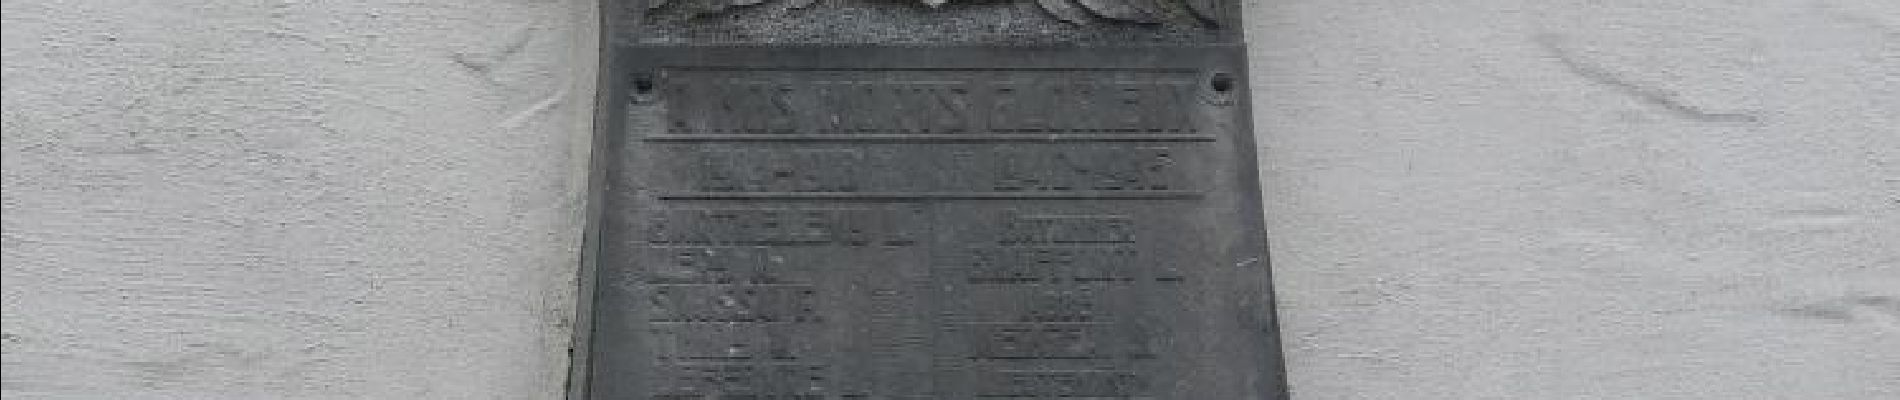 POI Étalle - Monument aux morts de Villers-sur-Semois - Photo